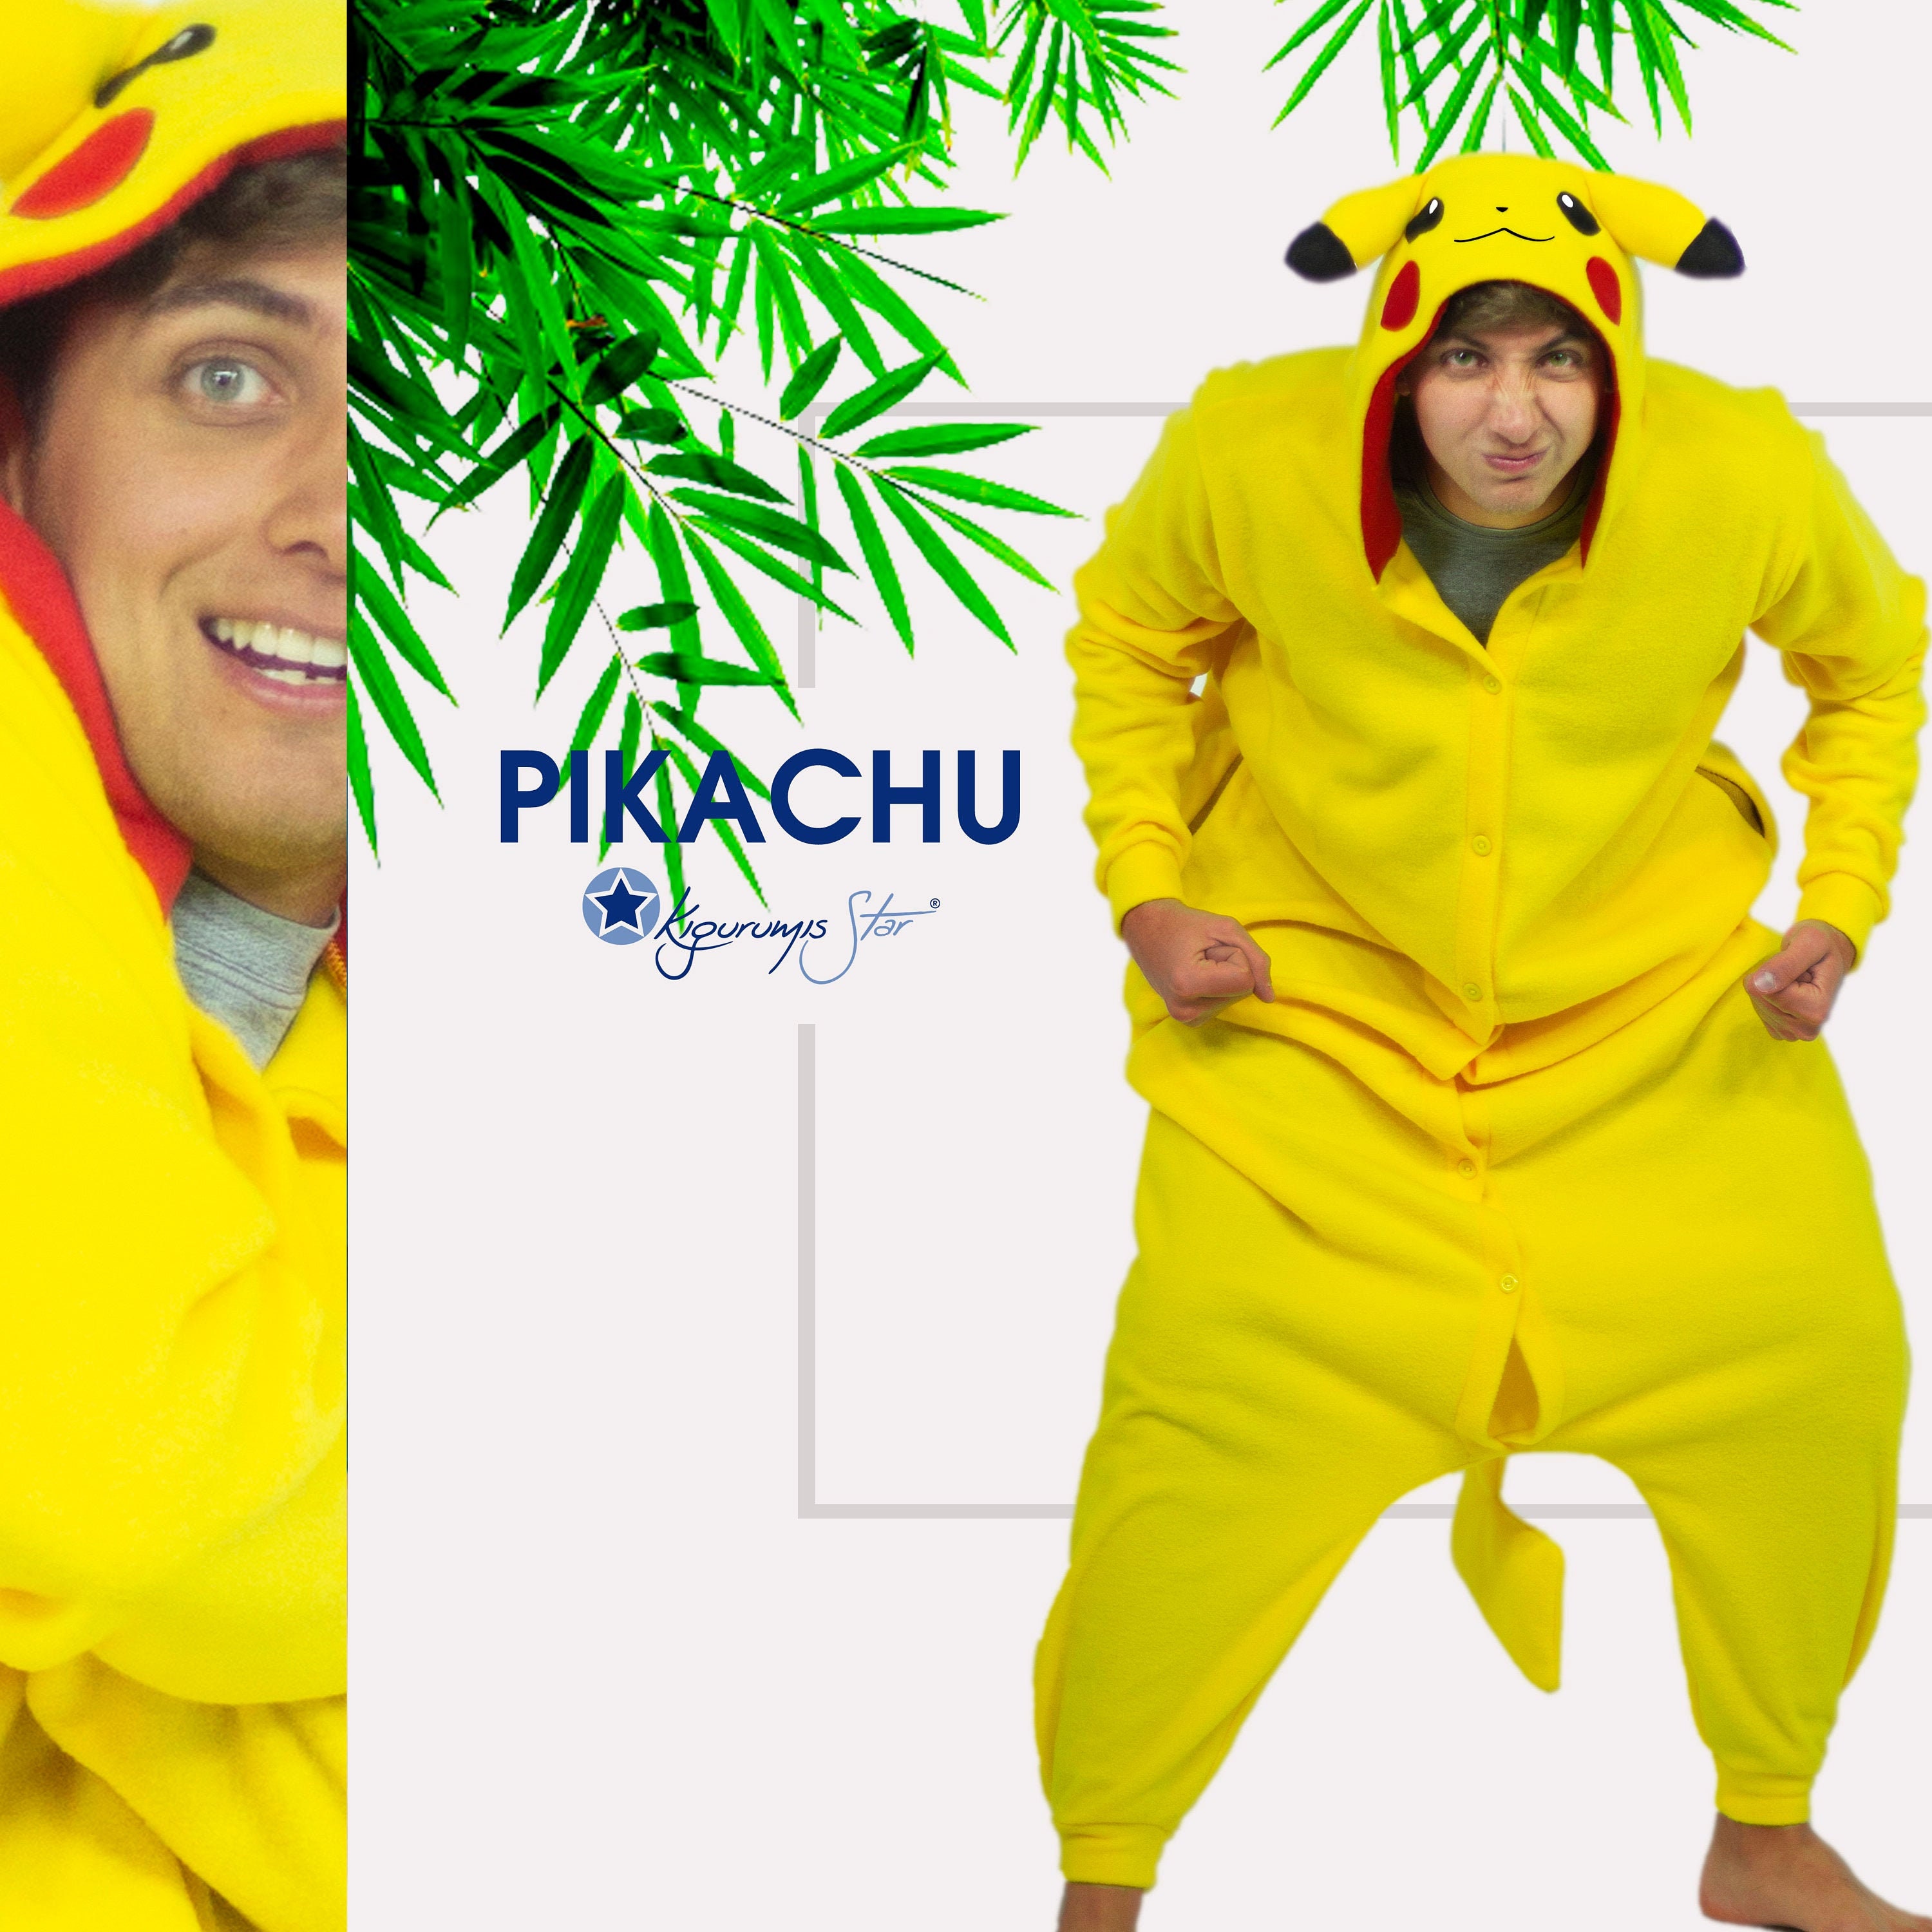 Kigurumi Pikachu pour votre bout de chou - Pyjama D'Or